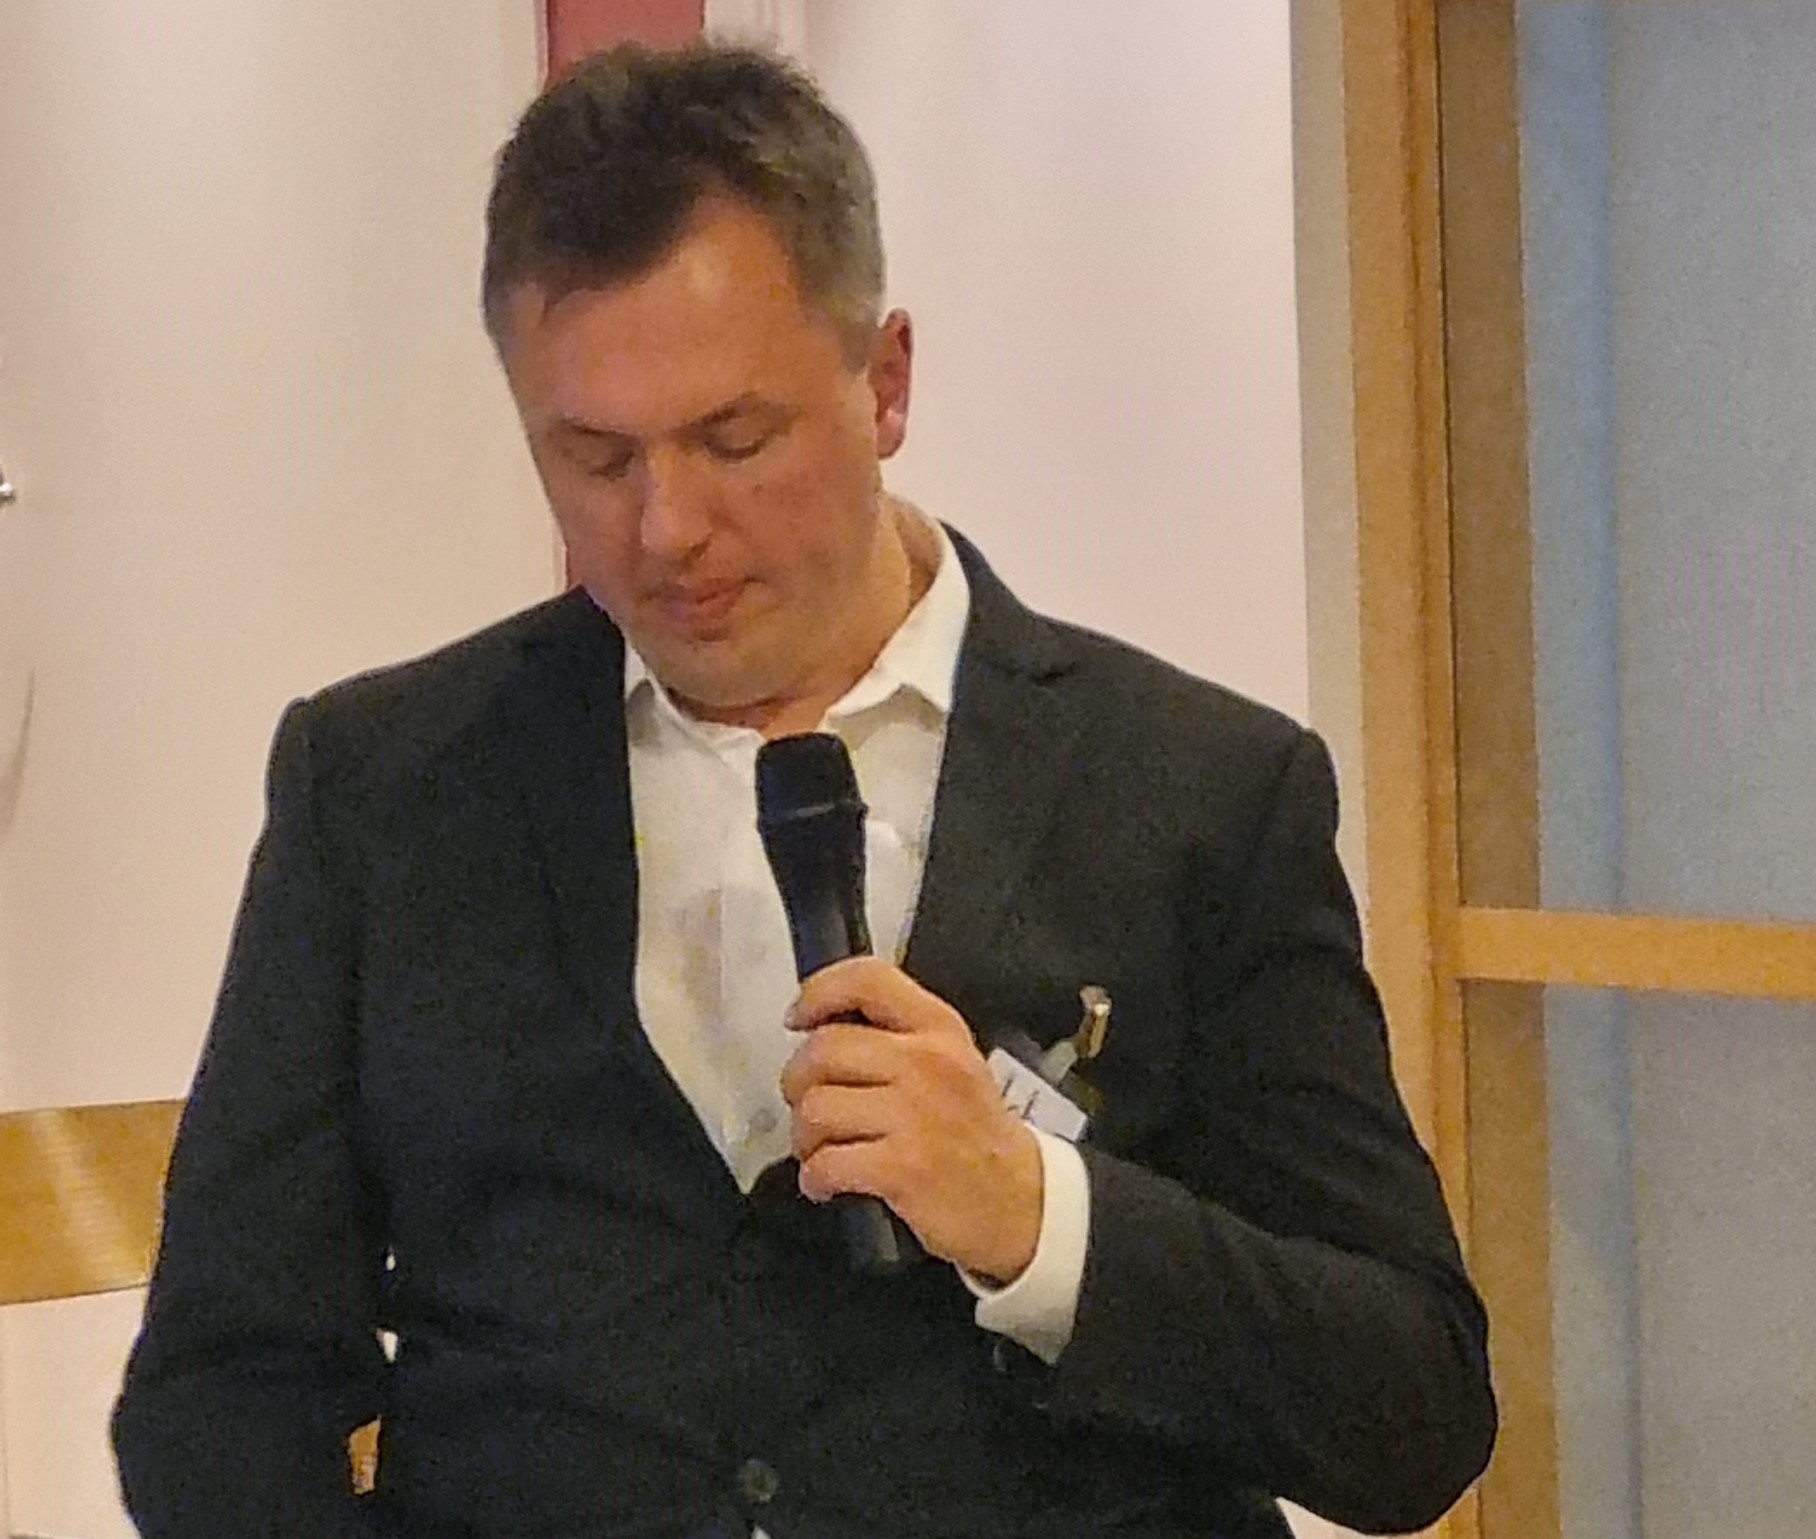 Johan Steirud talar. Har en svart kostym, vit skjorta, sitter i rullstol. 